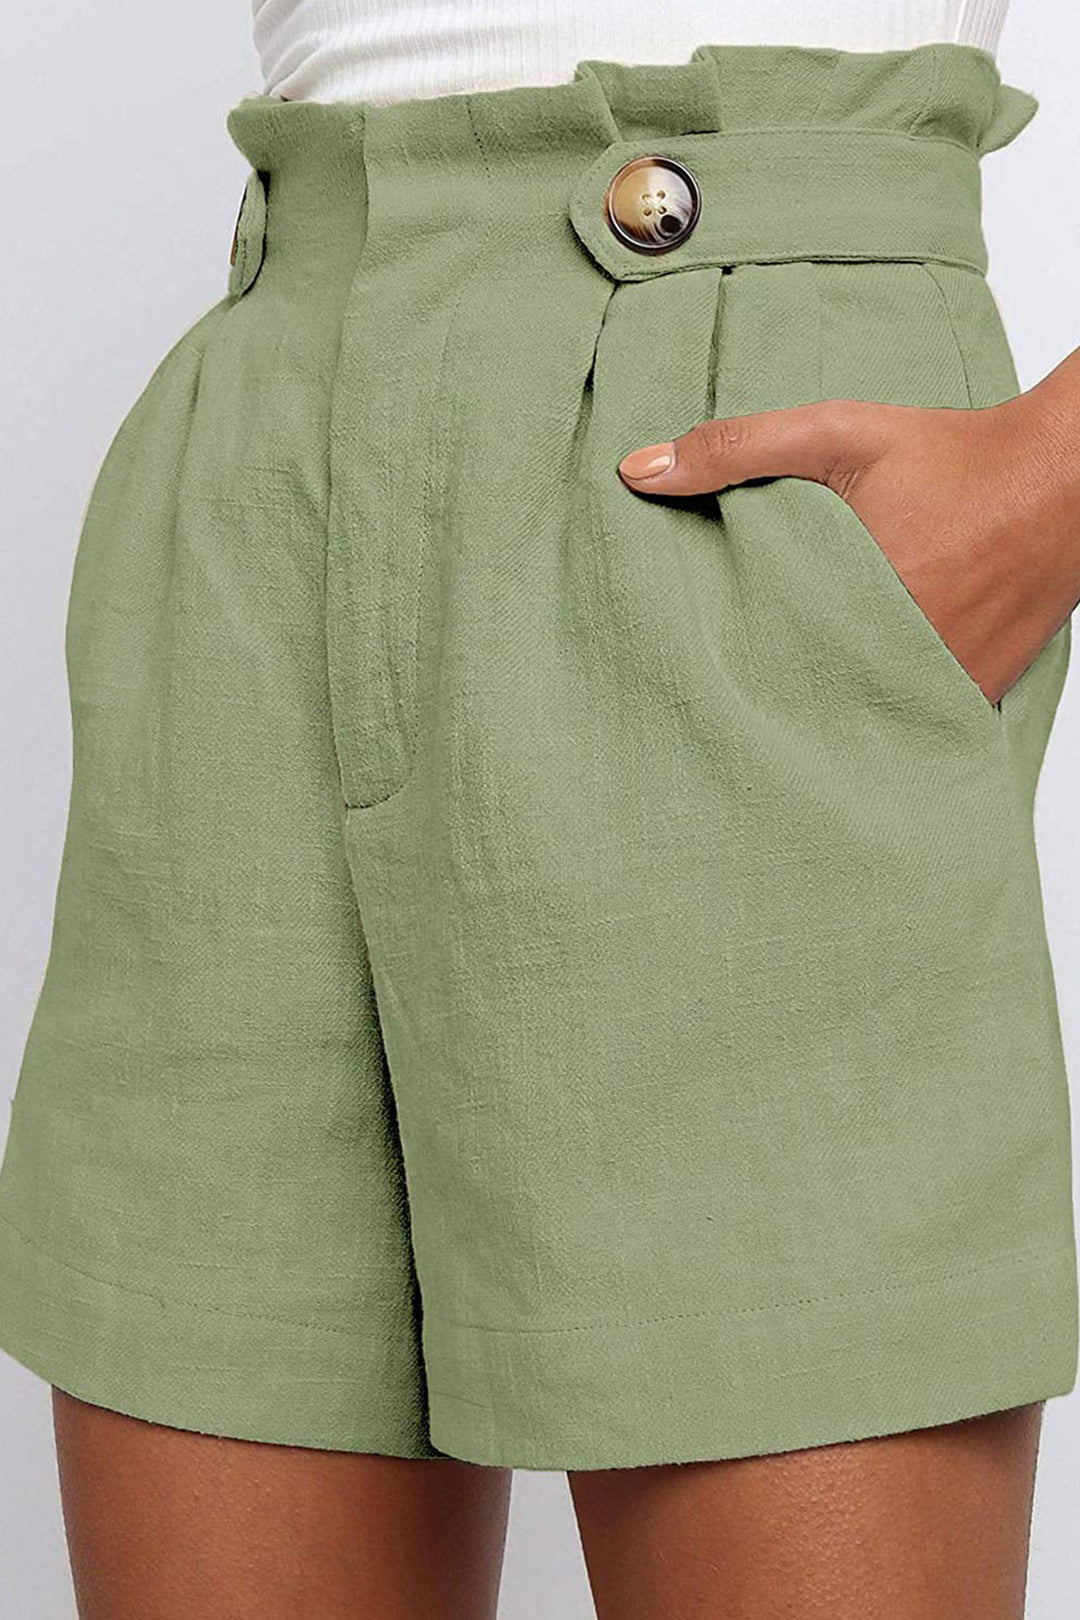 Pantalon Lino Algodon - WARDROBE ESSENTIALS 3.0